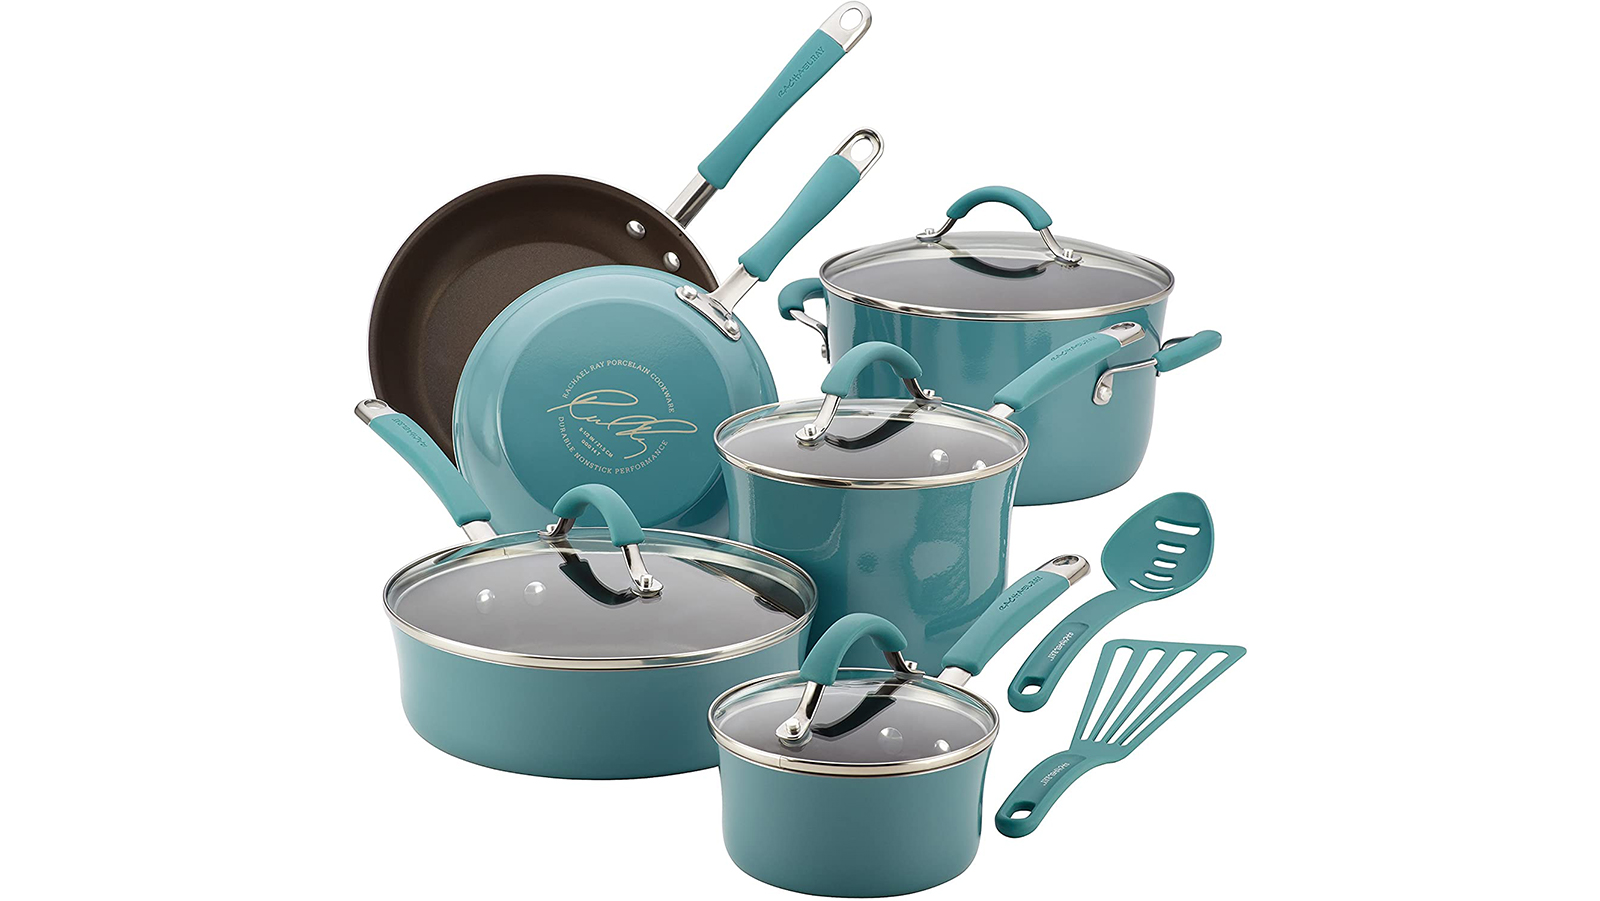 5) Rachael Ray Cucina Nonstick Cookware Set